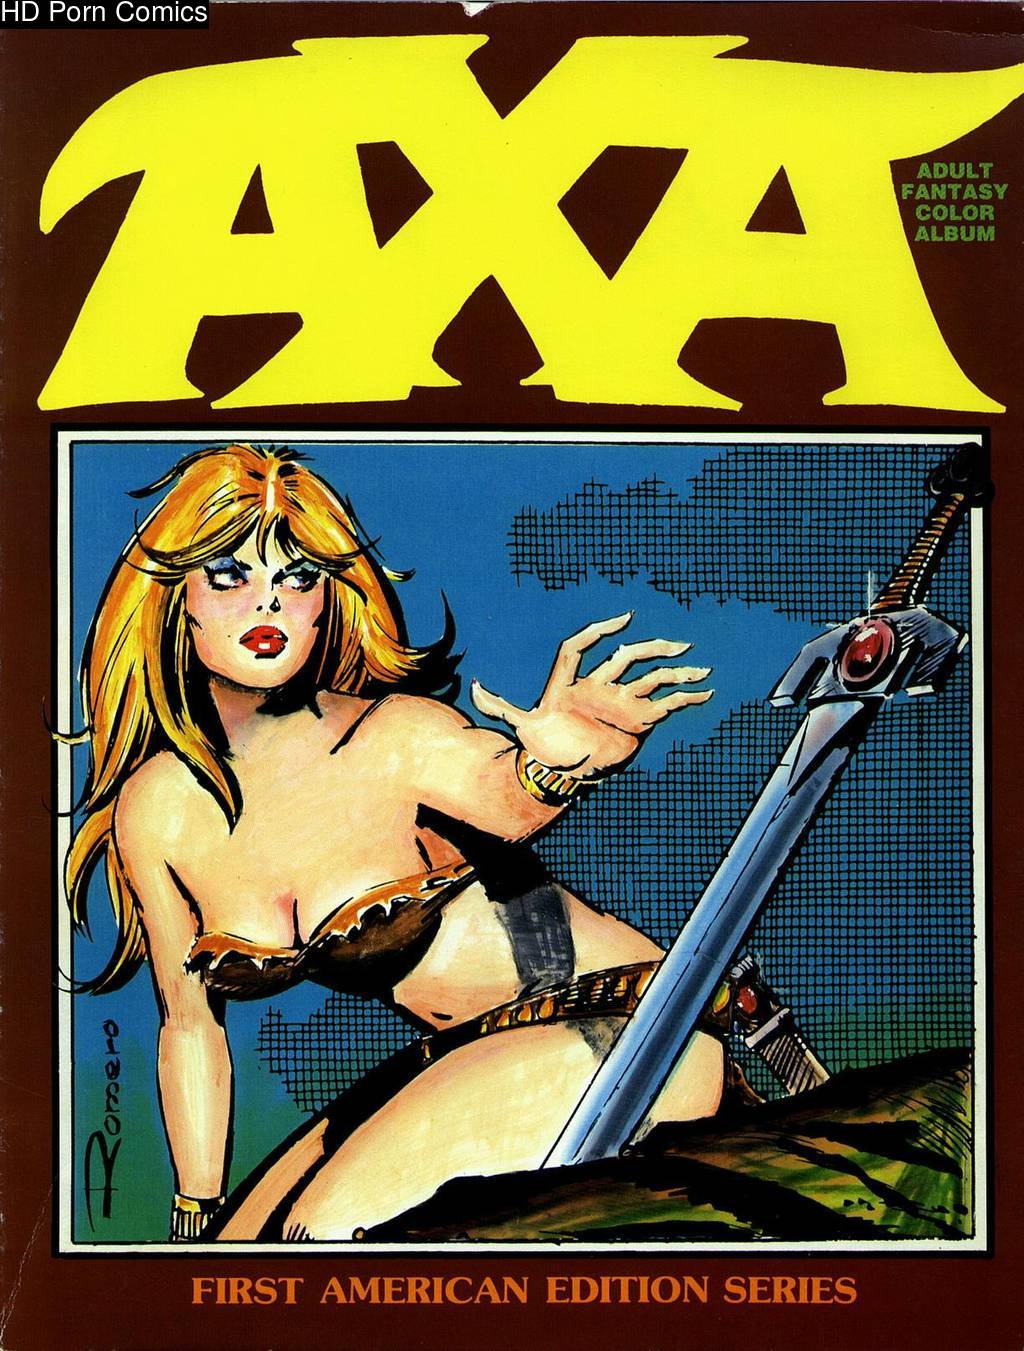 Adult Fantasy Toons - Axa Adult Fantasy Color Album comic porn | HD Porn Comics